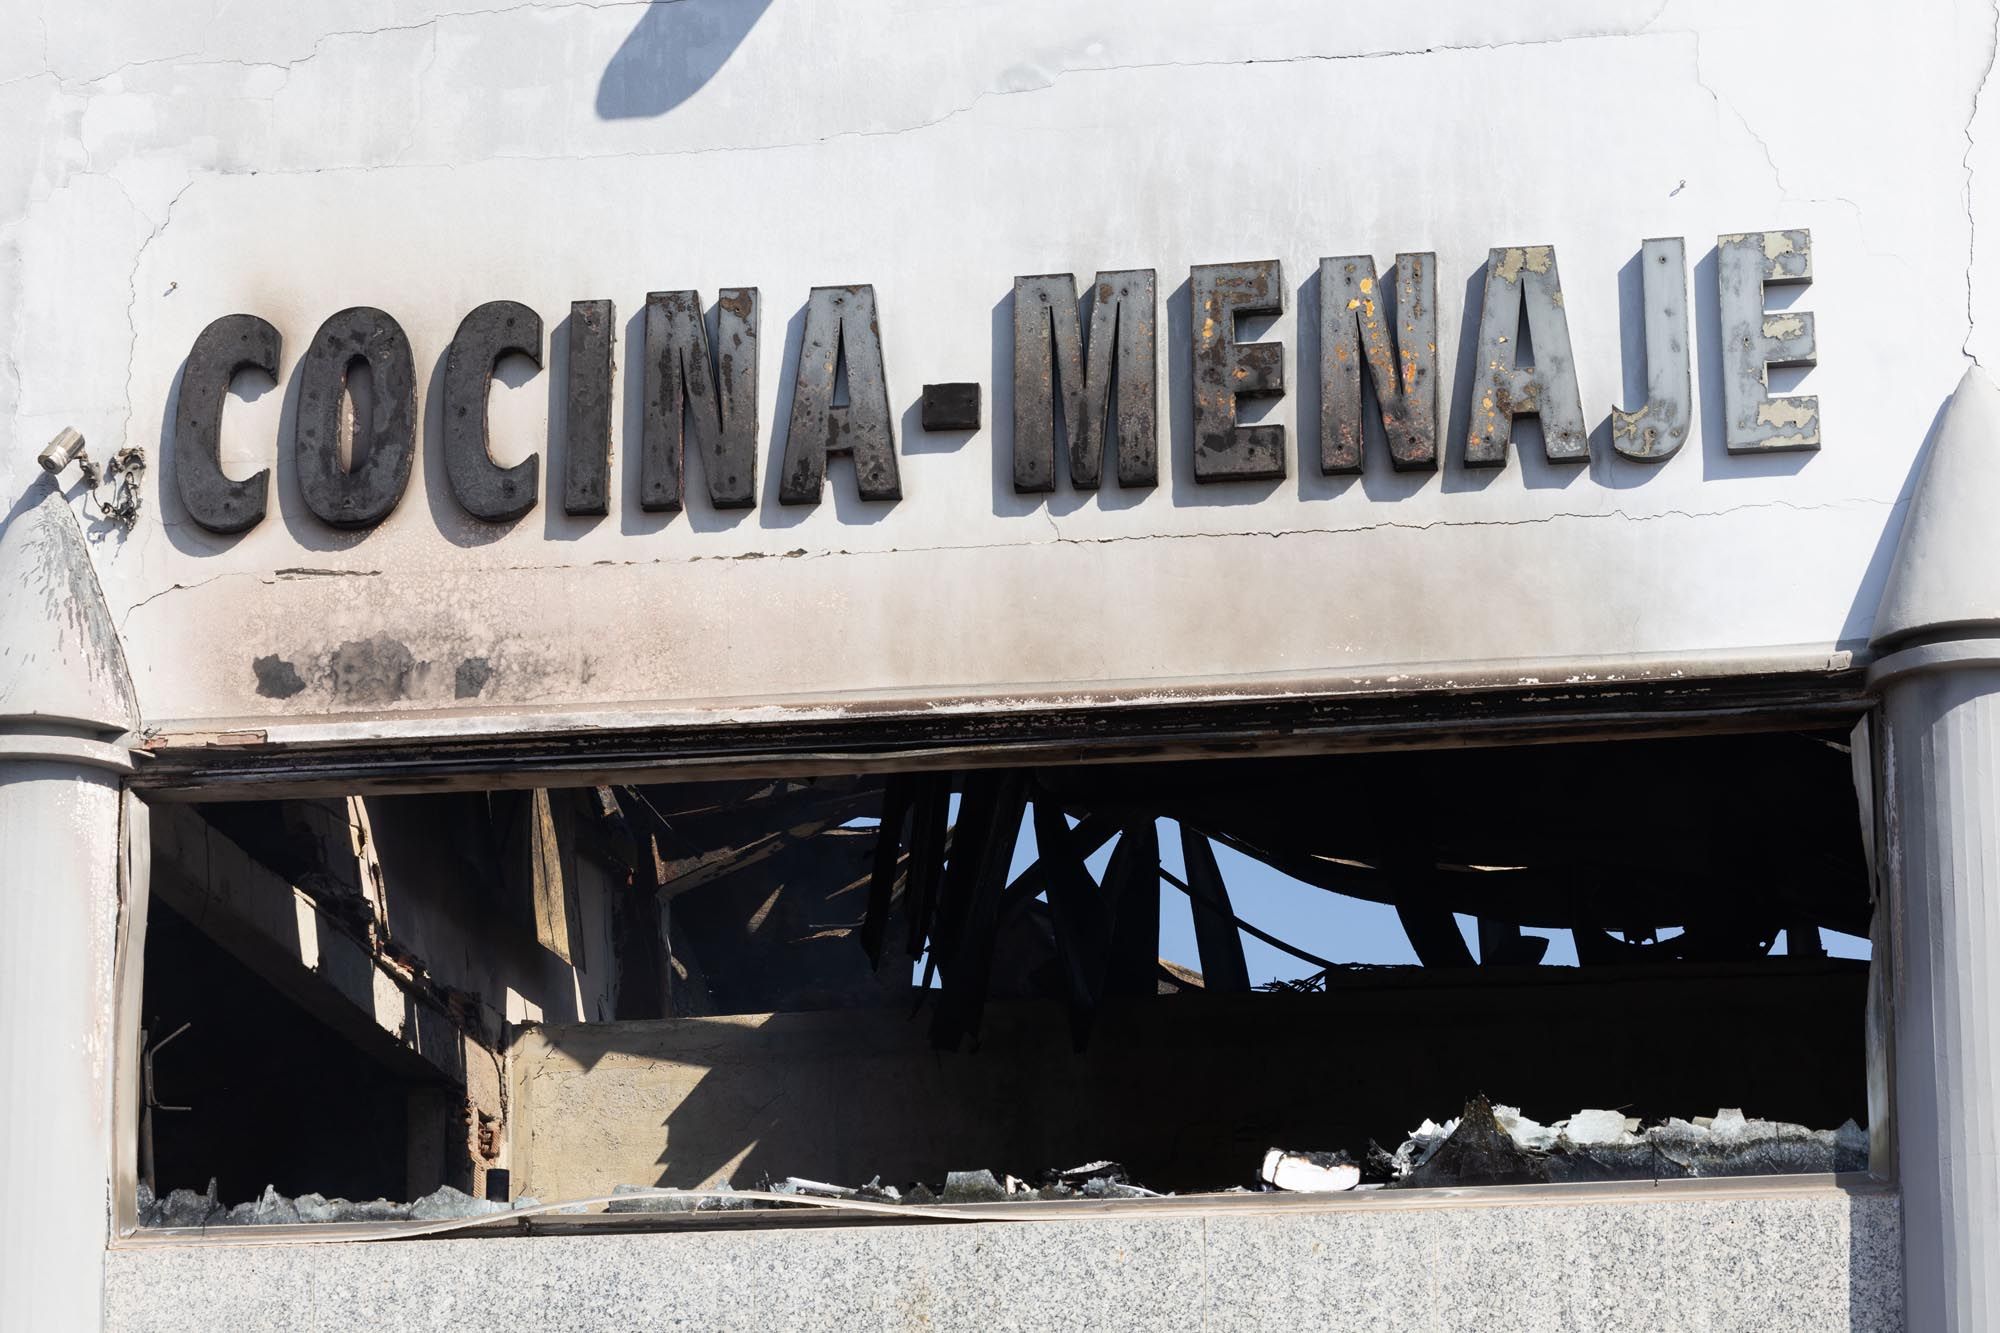 Desoladoras imágenes el día después del incendio de la nave de Citubo en Ibiza